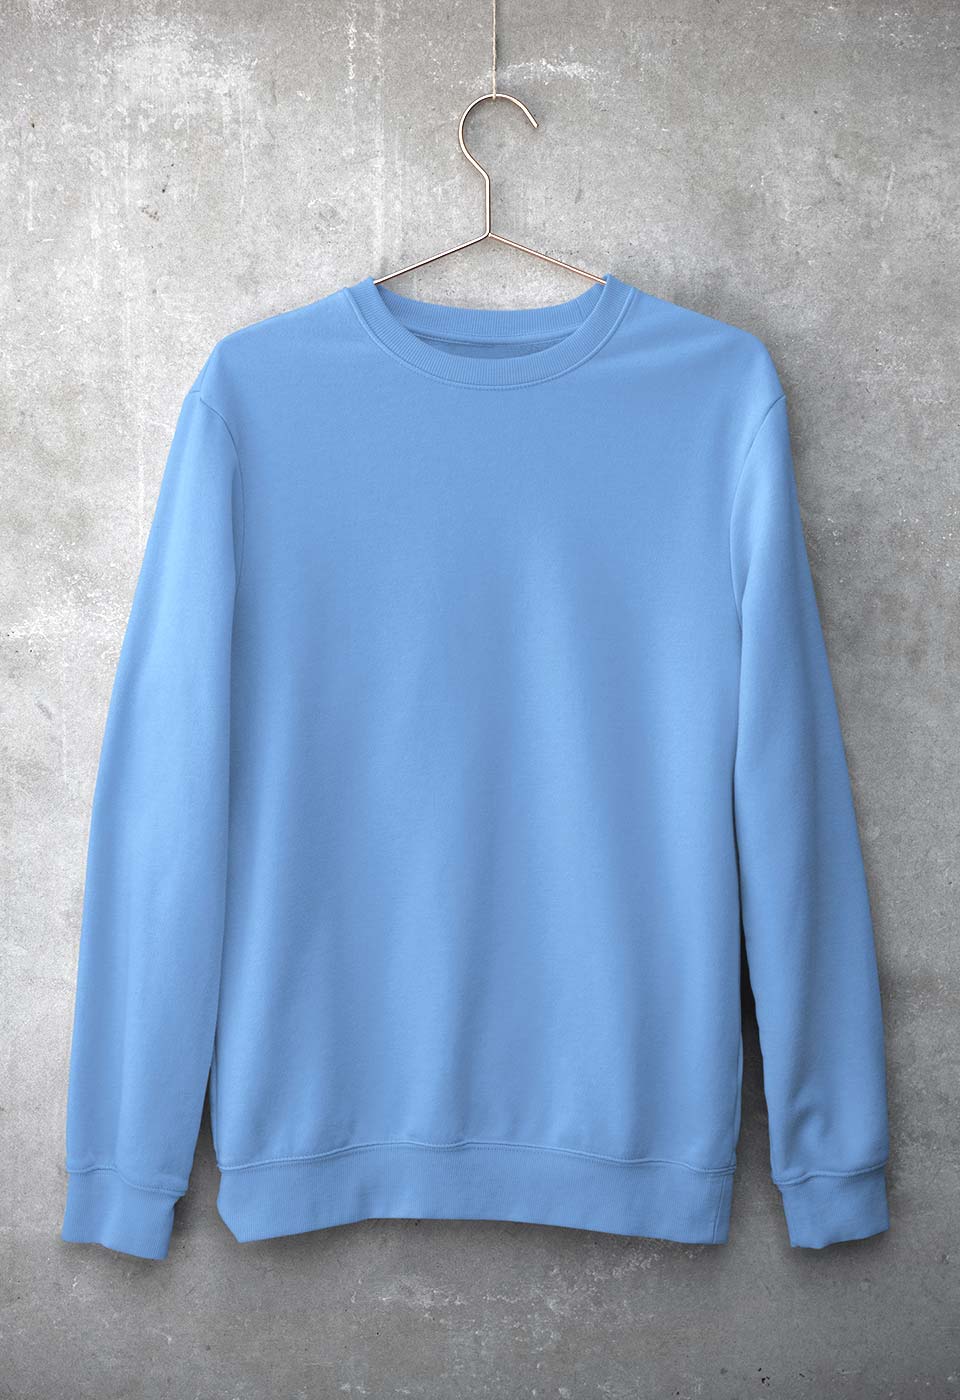 Plain Light Blue Unisex Sweatshirt for Men/Women